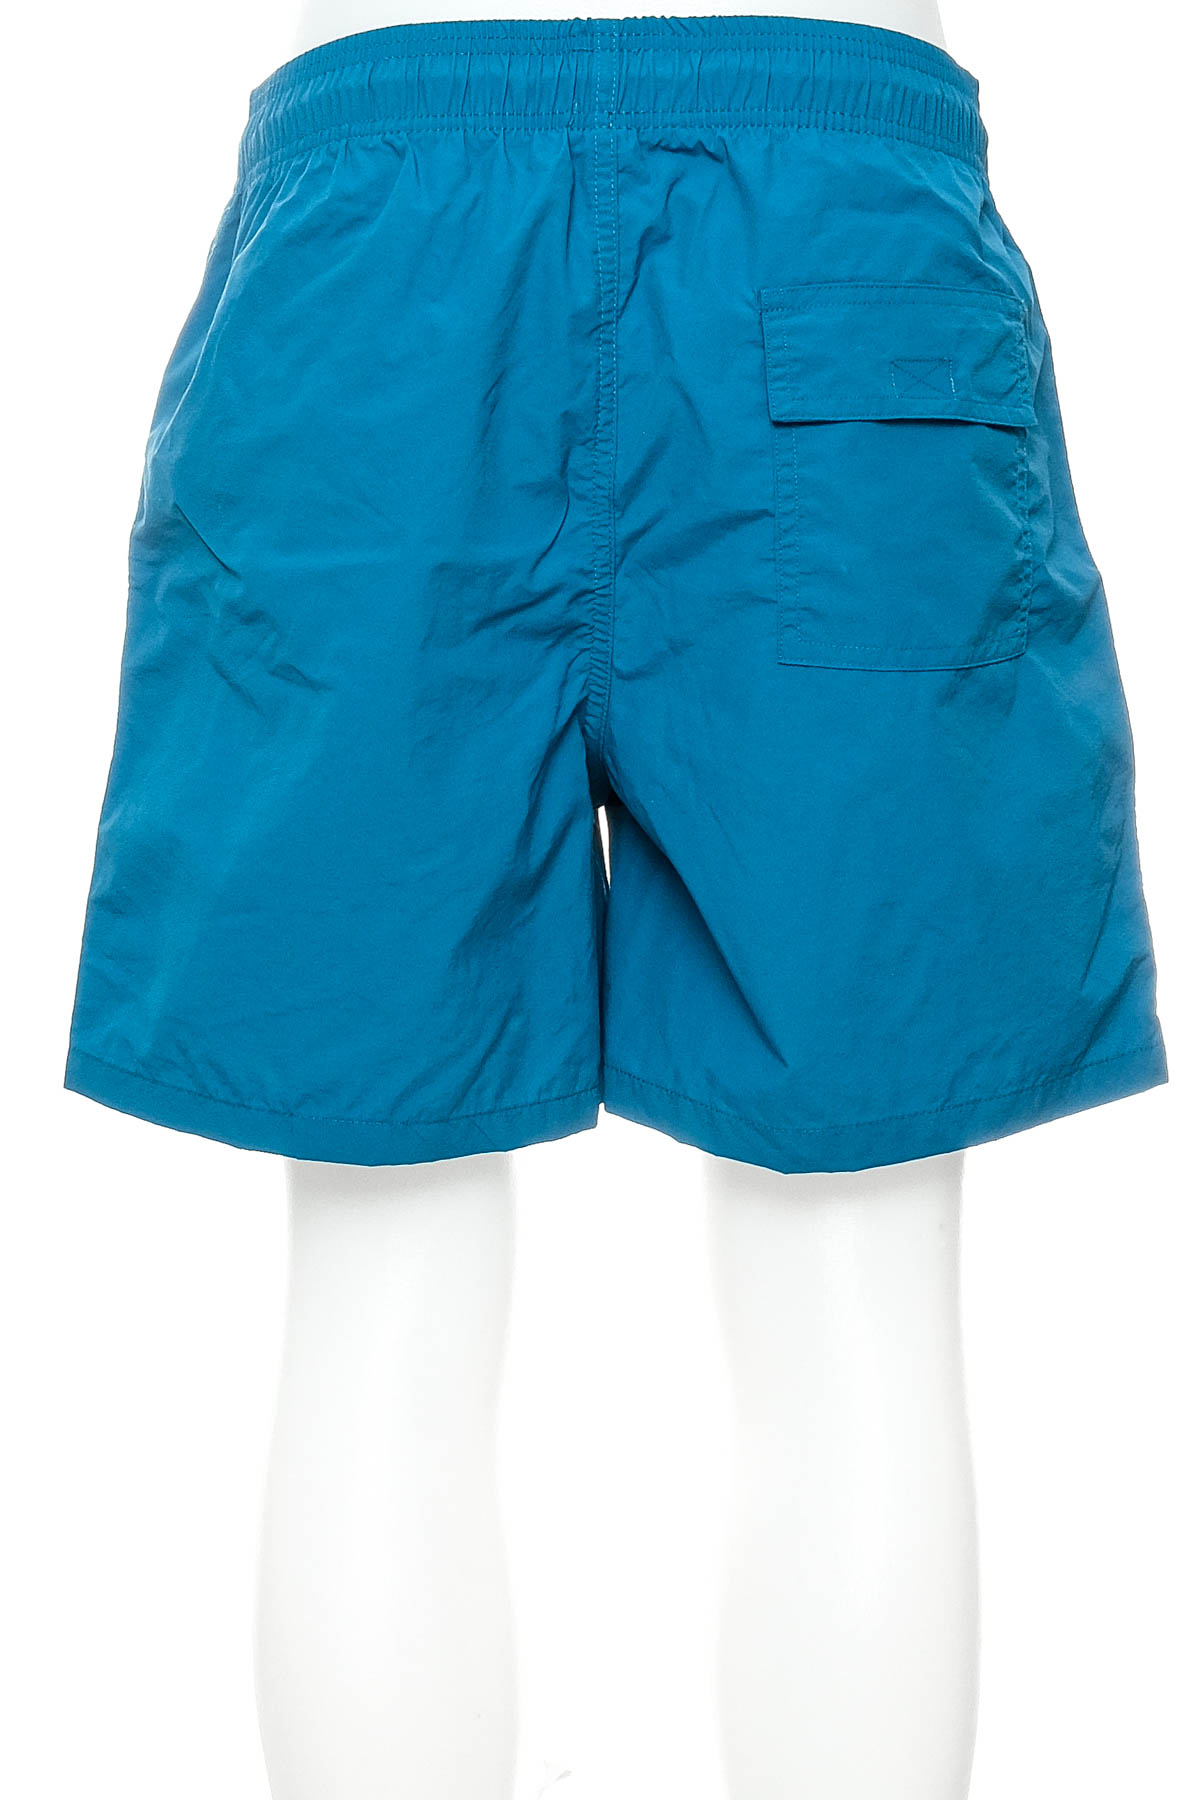 Men's shorts - Escatch - 1